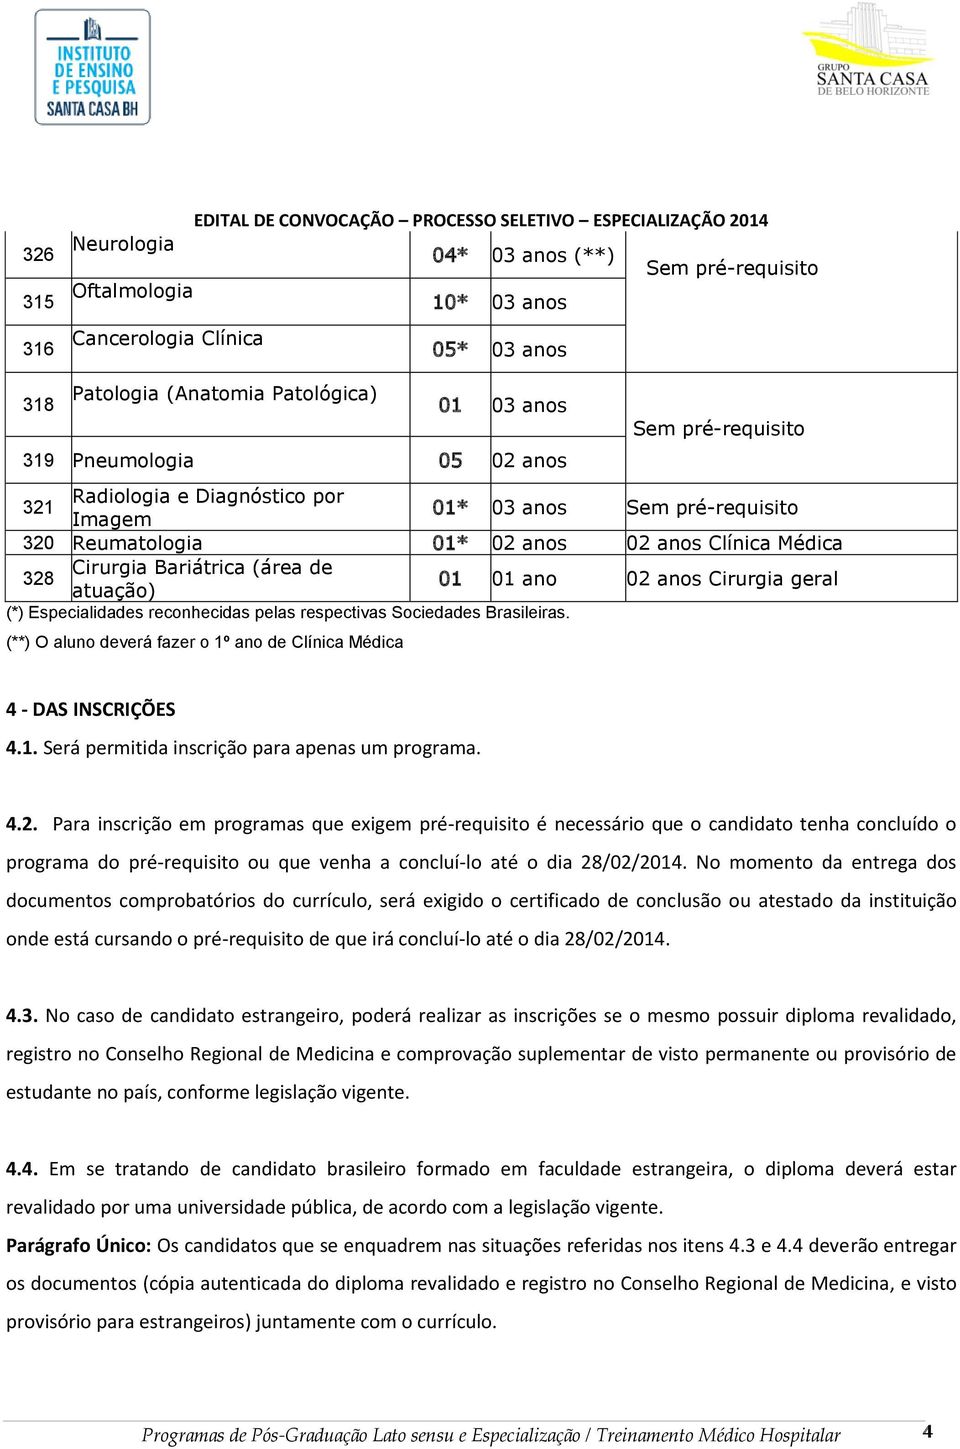 Cirurgia Bariátrica (área de 328 01 01 ano 02 anos Cirurgia geral atuação) (*) Especialidades reconhecidas pelas respectivas Sociedades Brasileiras.